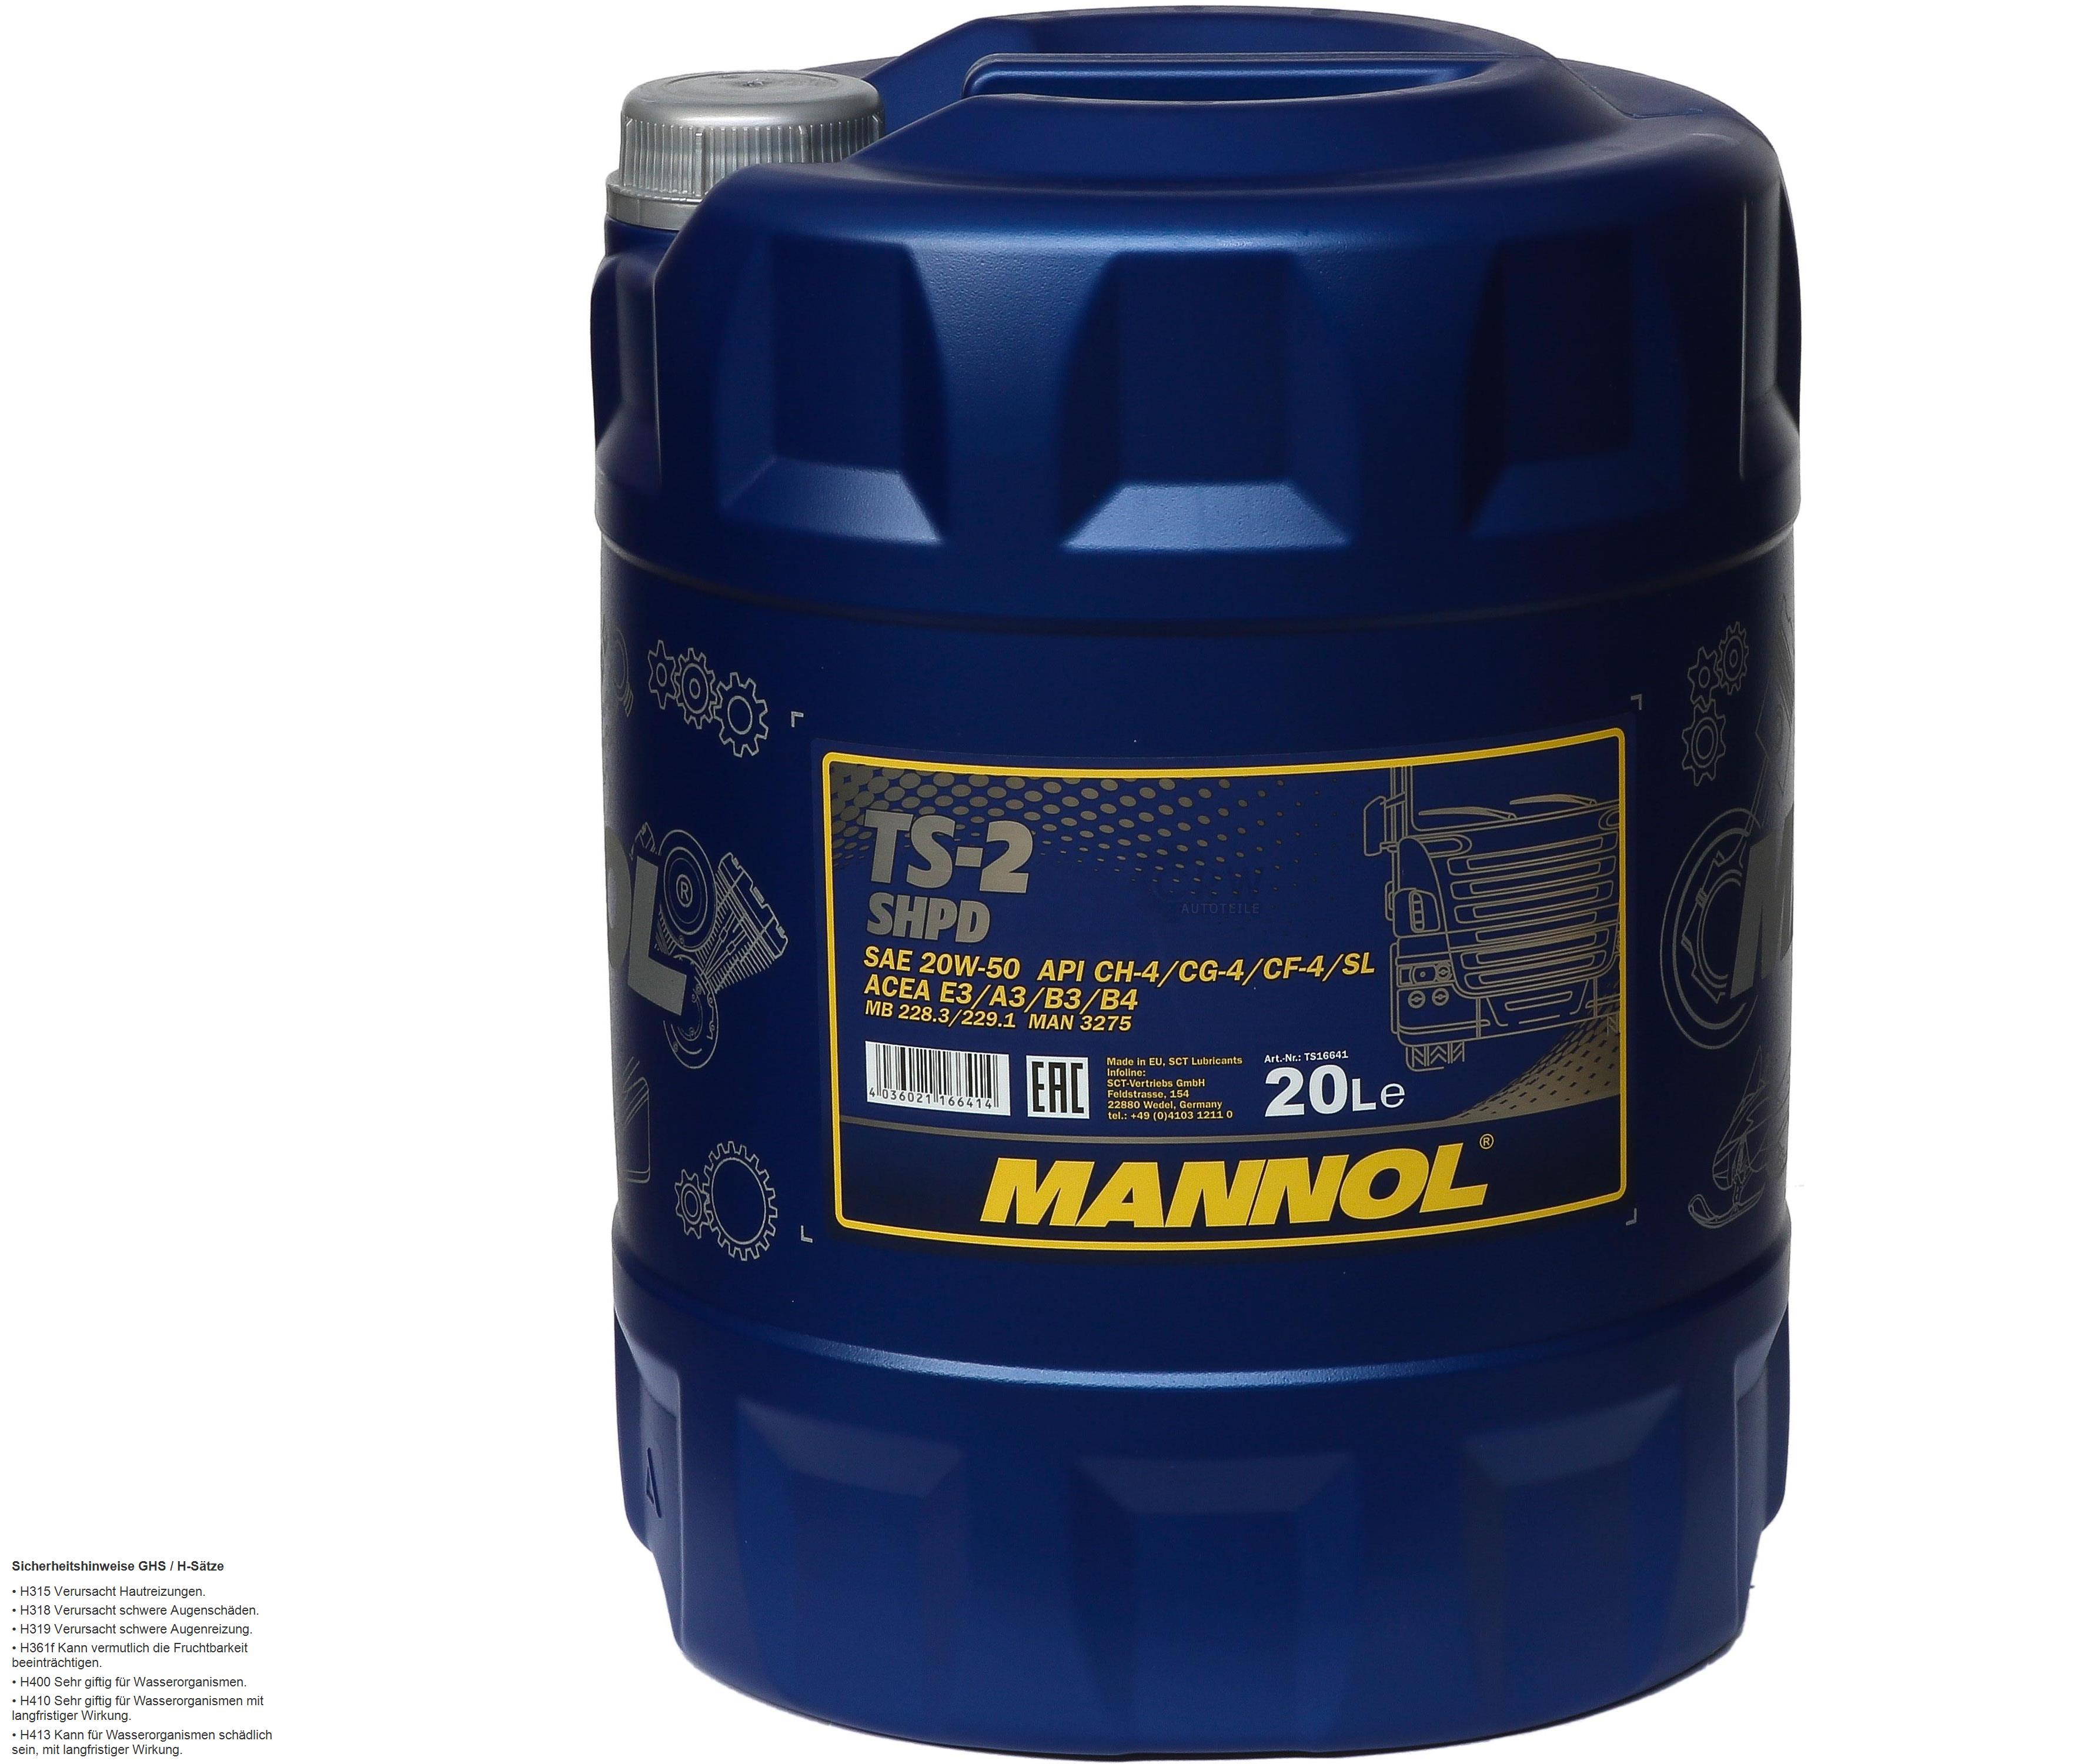 20 Liter Orignal MANNOL Motoröl TS-2 SHPD 20W-50 API CH-4/CG-4/CF-4/SL